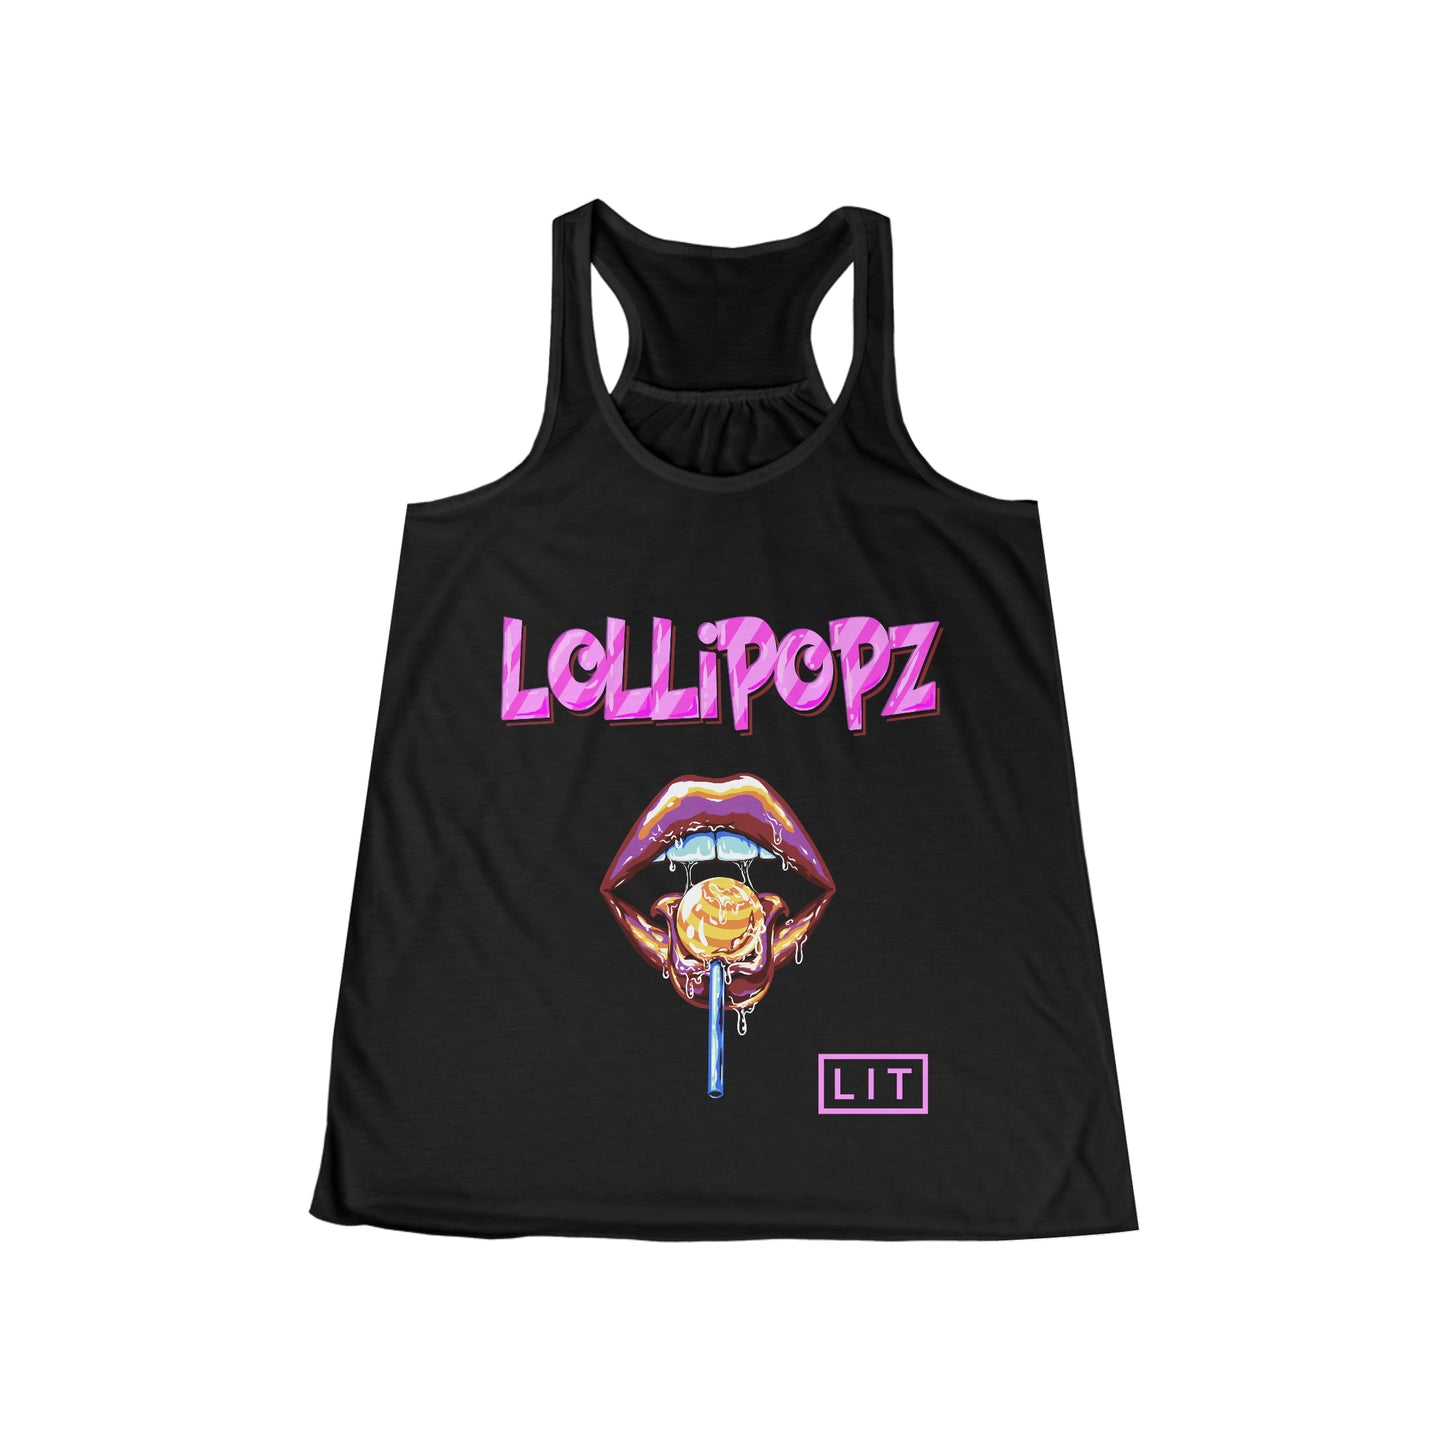 Lollipopz - Women's Flowy Racerback Tank